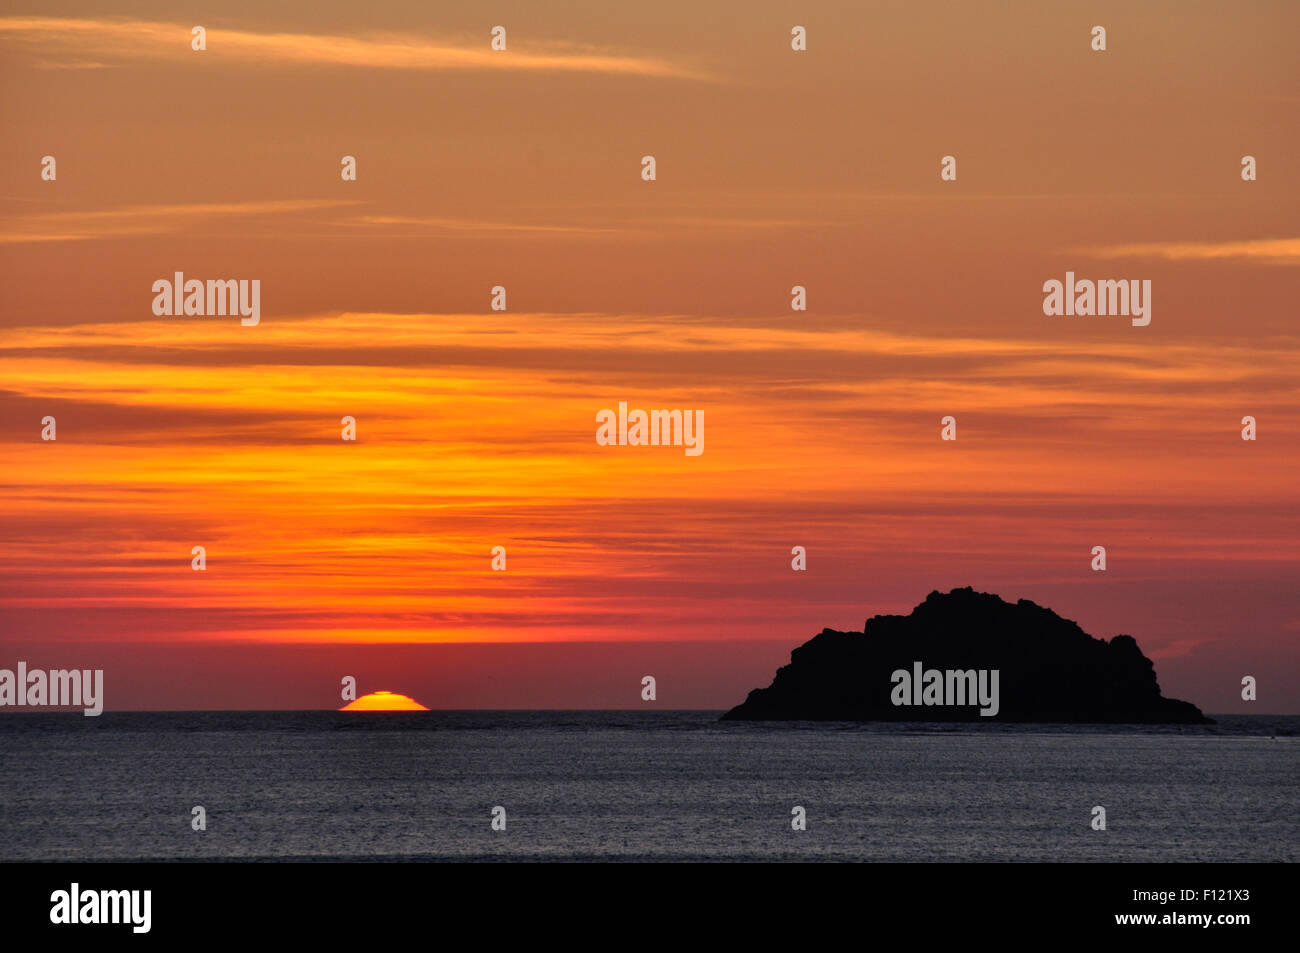 North Cornwall - impostazione sun toccando il mare - Isola offshore in sagoma scura - Arancio - Rosso e oro chiazzata cloud sky Foto Stock